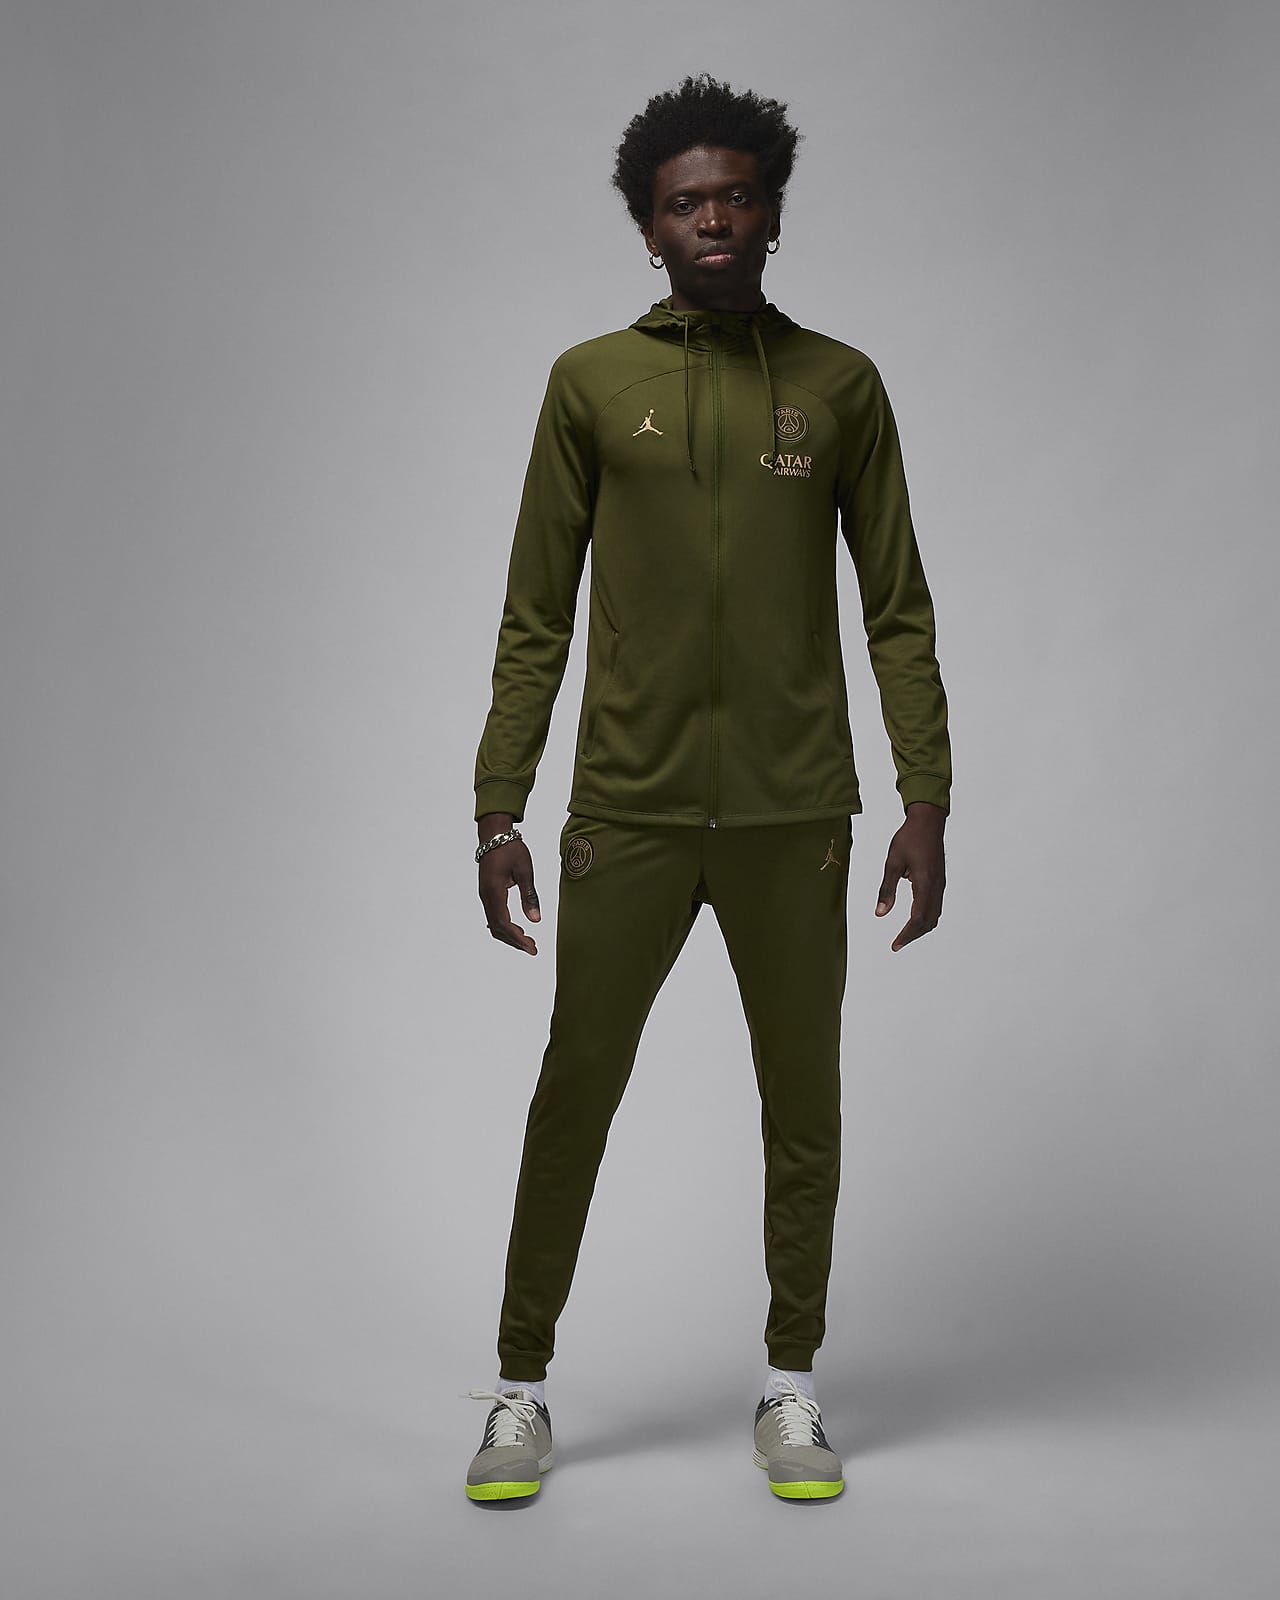 Ανδρική ποδοσφαιρική φόρμα με κουκούλα Jordan Dri-FIT δεύτερης εναλλακτικής εμφάνισης Παρί Σεν Ζερμέν Strike